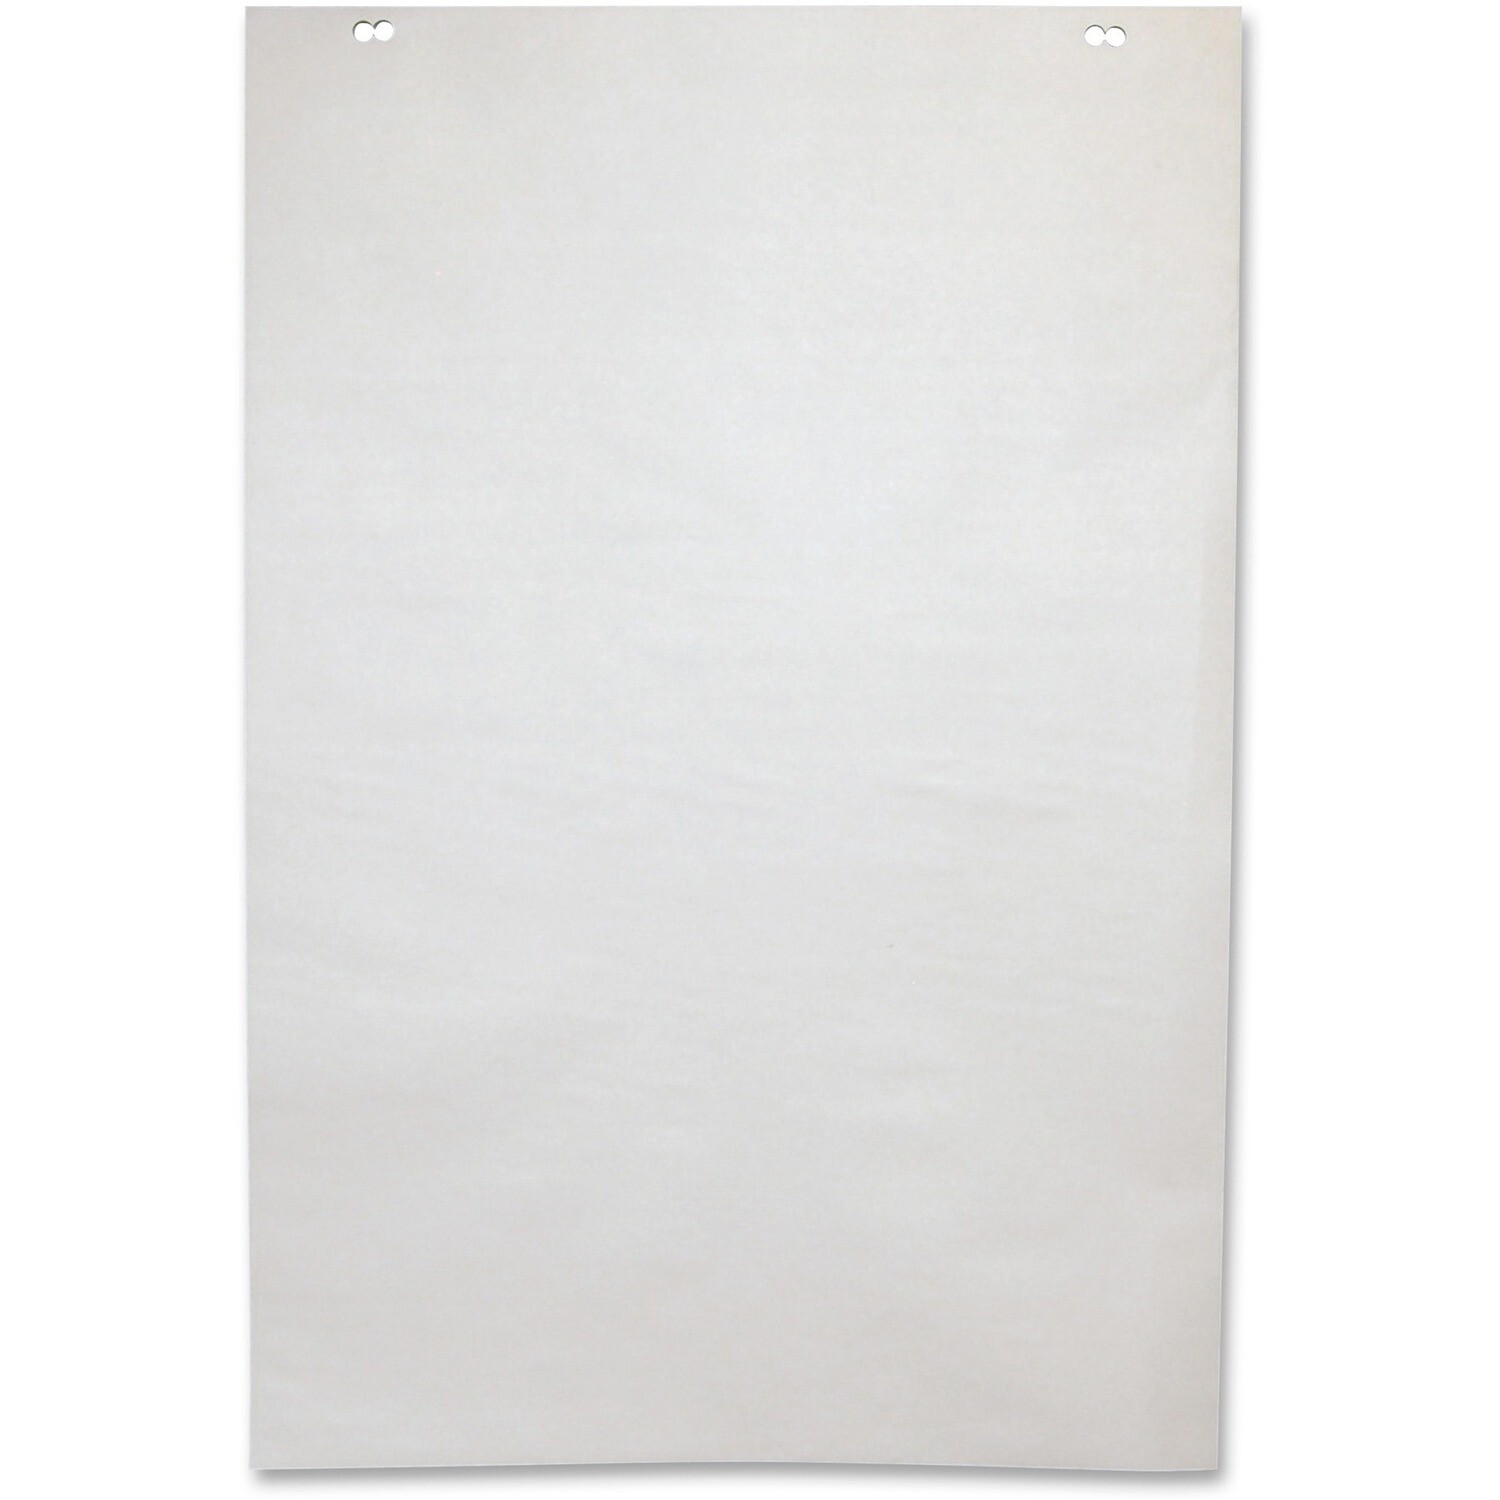 Paper, Flip Chart, Newsprint 24" x 36", Plain, Single